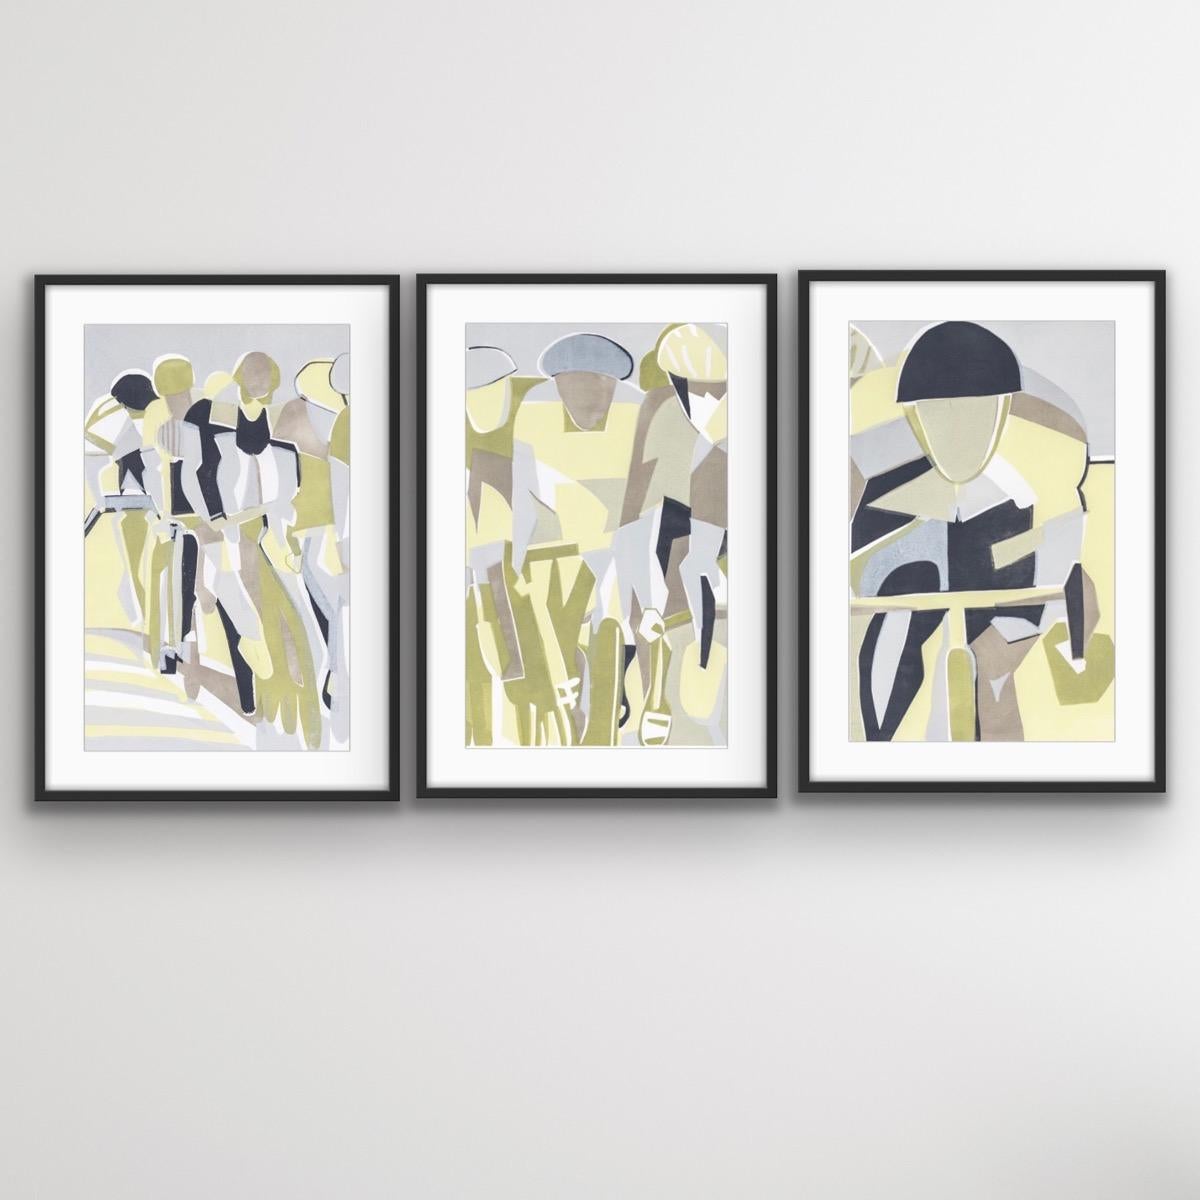 Kunsthandwerkliche Kunst, Radfahrerkunst, Sportkunst, großformatige Kunst, figurative Kunst (Zeitgenössisch), Print, von Lisa Takahashi